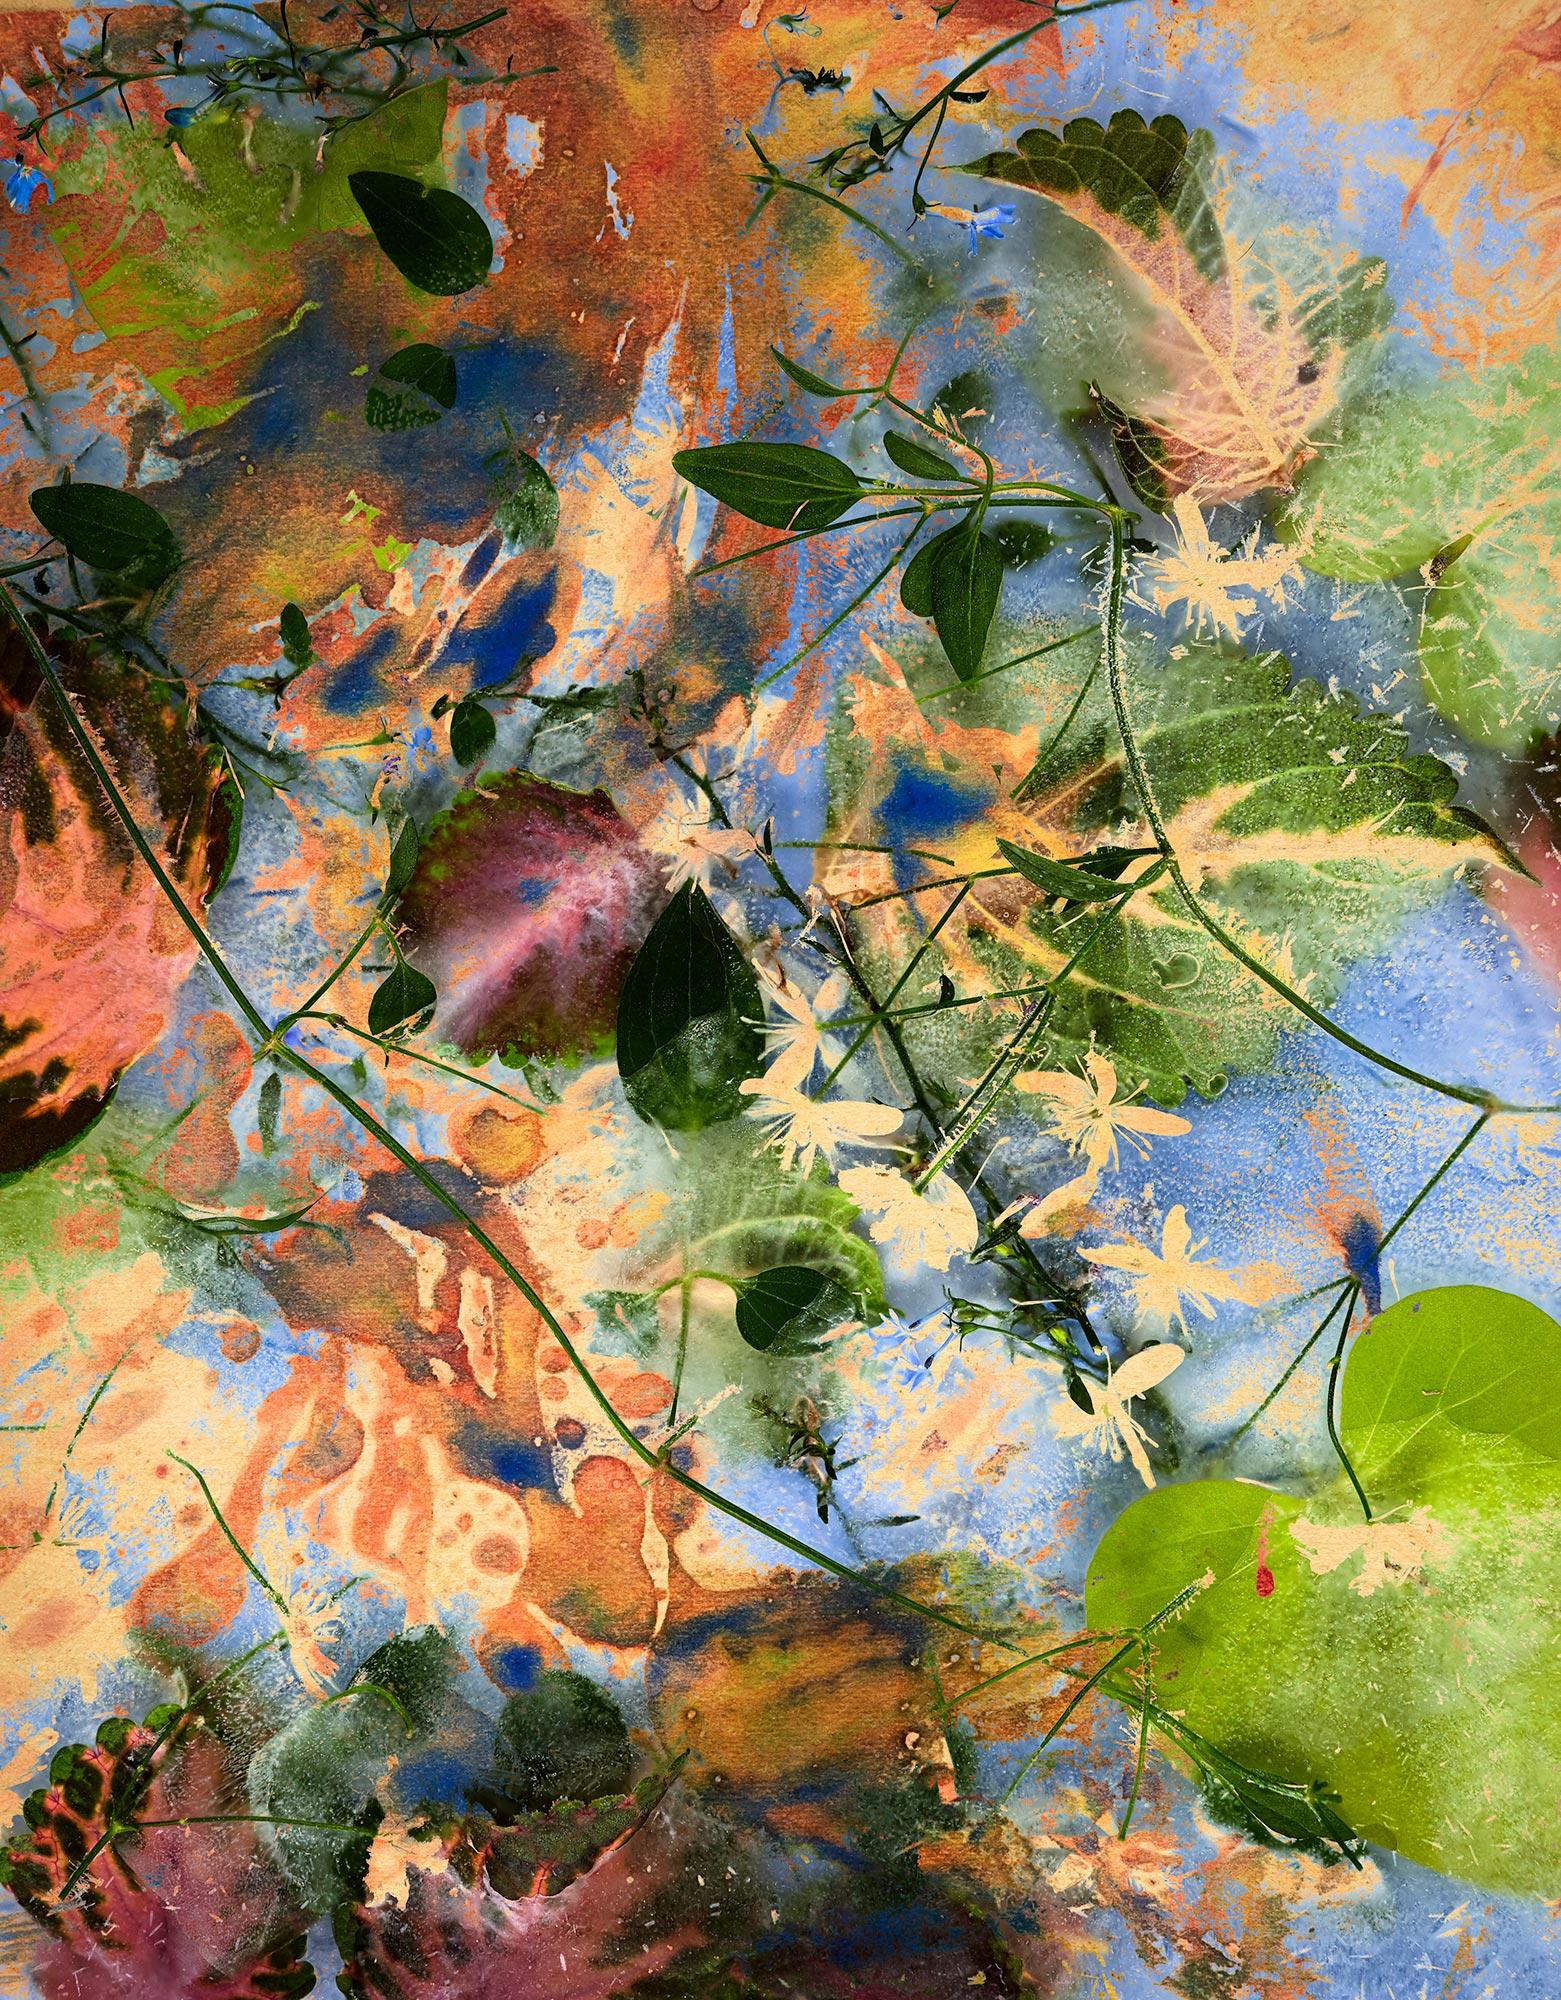 Jardin n° 4, 2023 de Chris Thomaidis, Toronto, Canada
Impression à pigment d'archivage  
26" x 33.3" 
Edition de 5

Le travail de Nature est basé sur les récits simples du quotidien capturés dans les environnements urbains et naturels, documentant